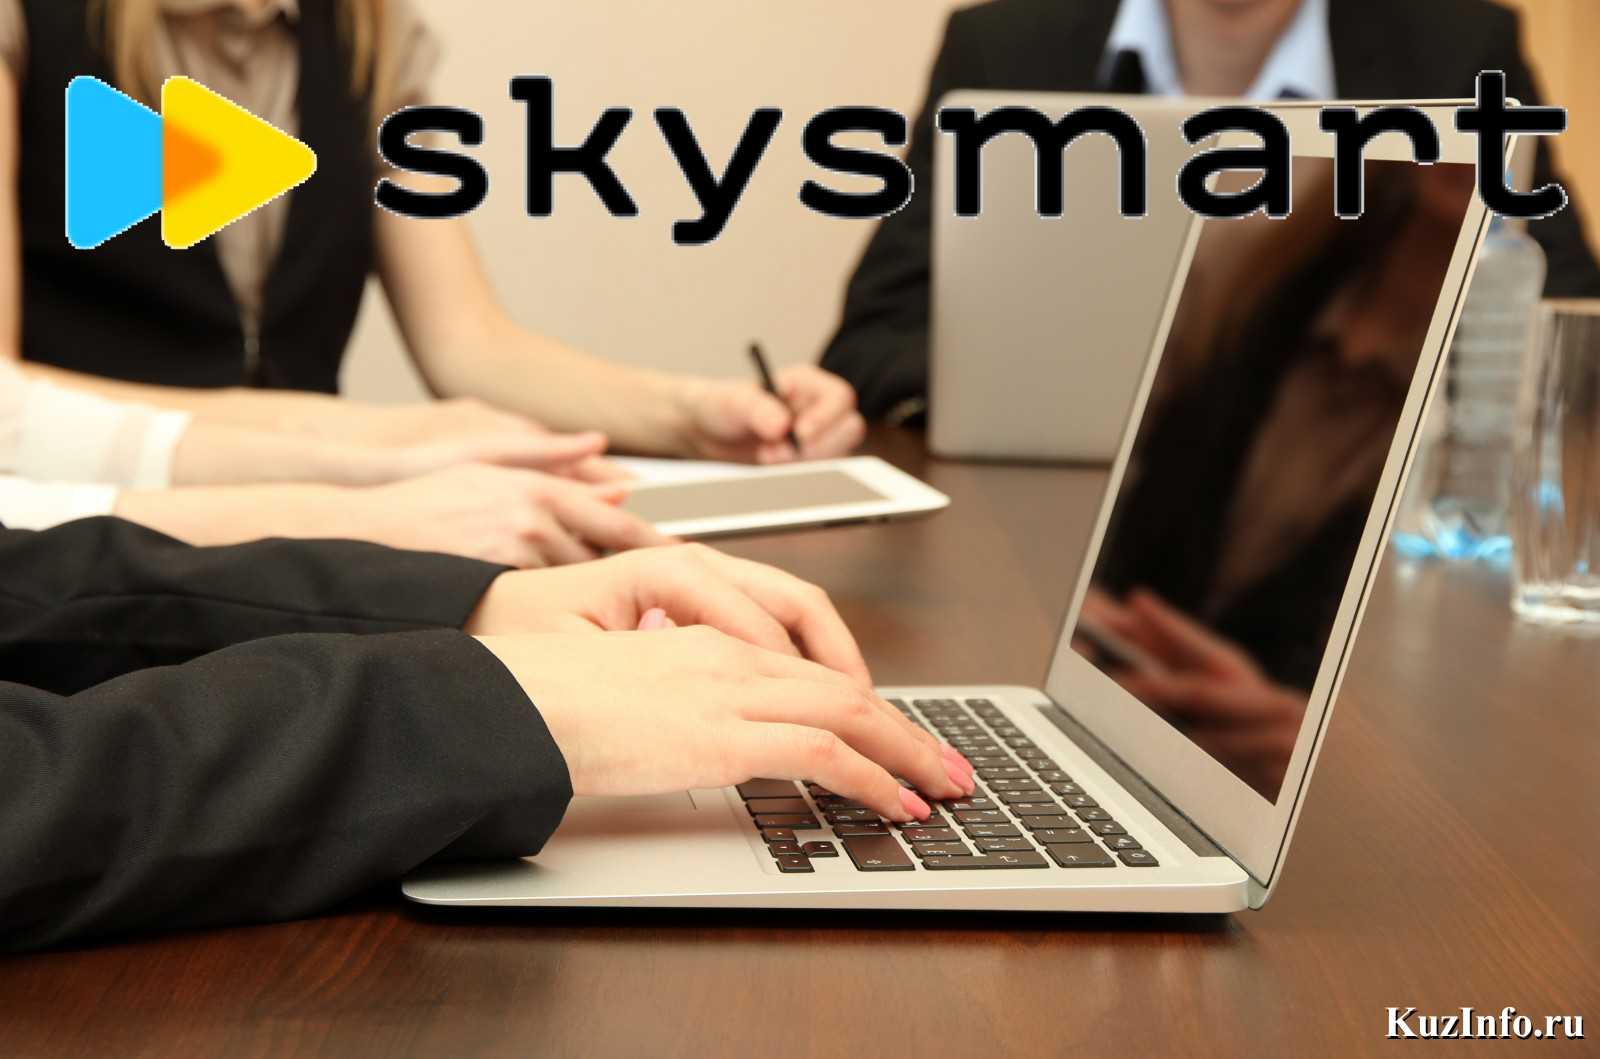 В новом учебном году кузбасские школьники и педагоги смогут работать на интерактивной платформе Skysmart